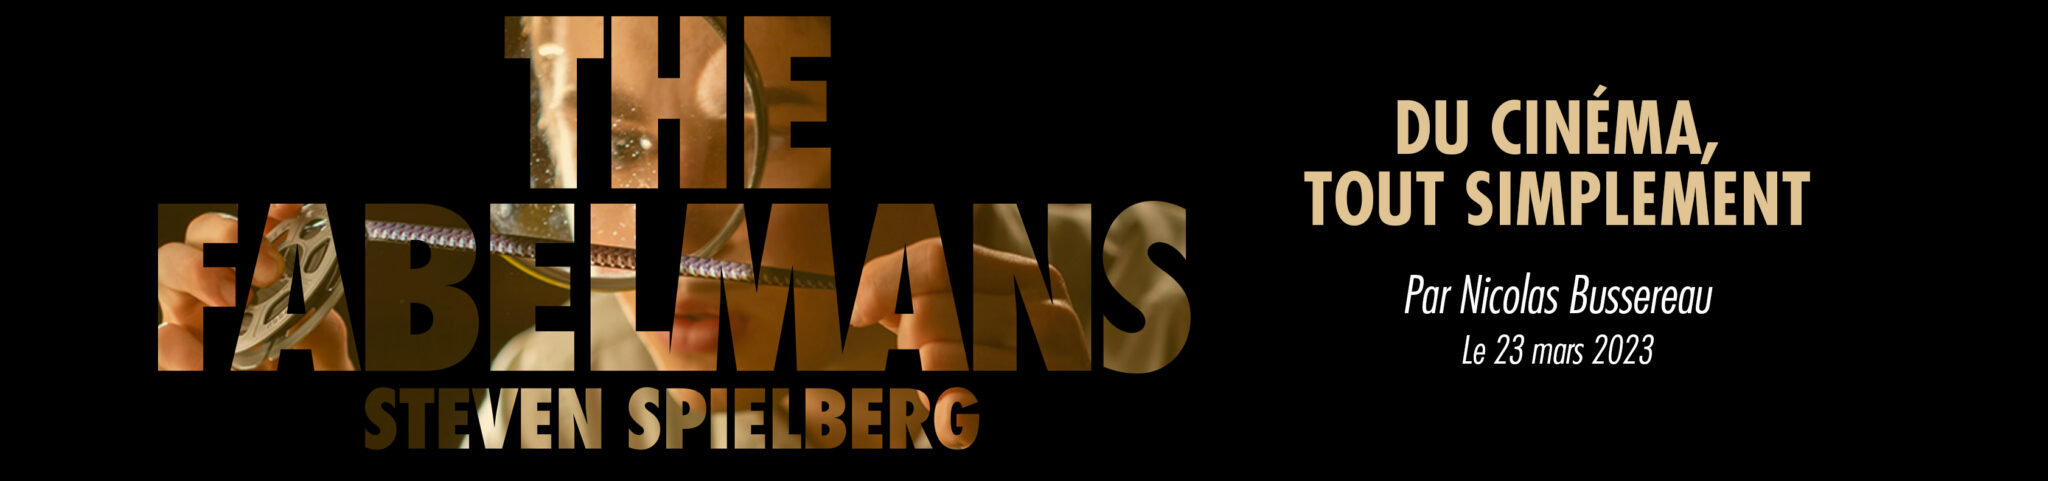 The Fabelmans – Du cinéma, tout simplement